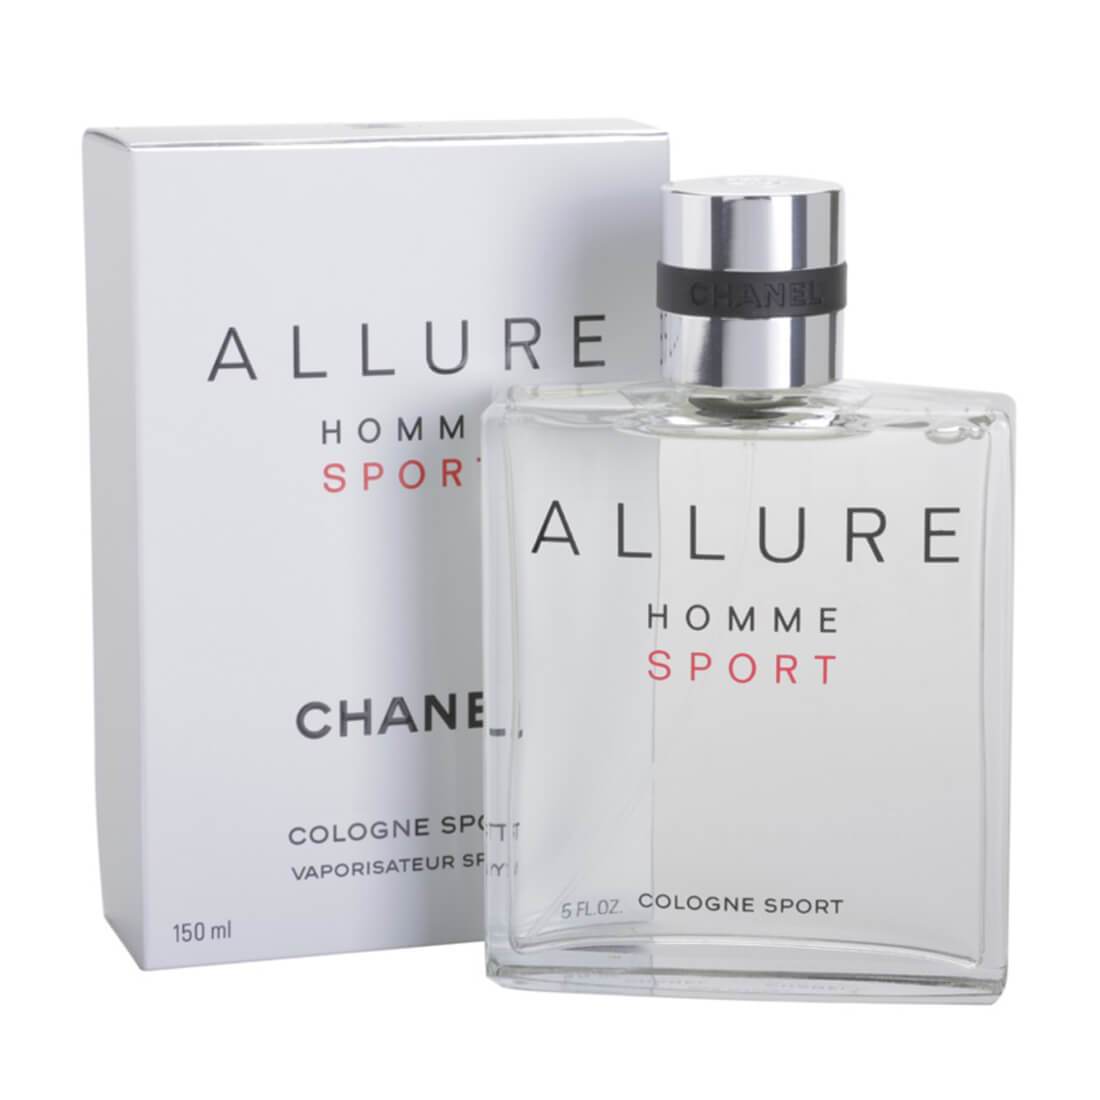 Chanel Allure Homme Sport Cologne Eau De Cologne Perfume For Men – 150ml